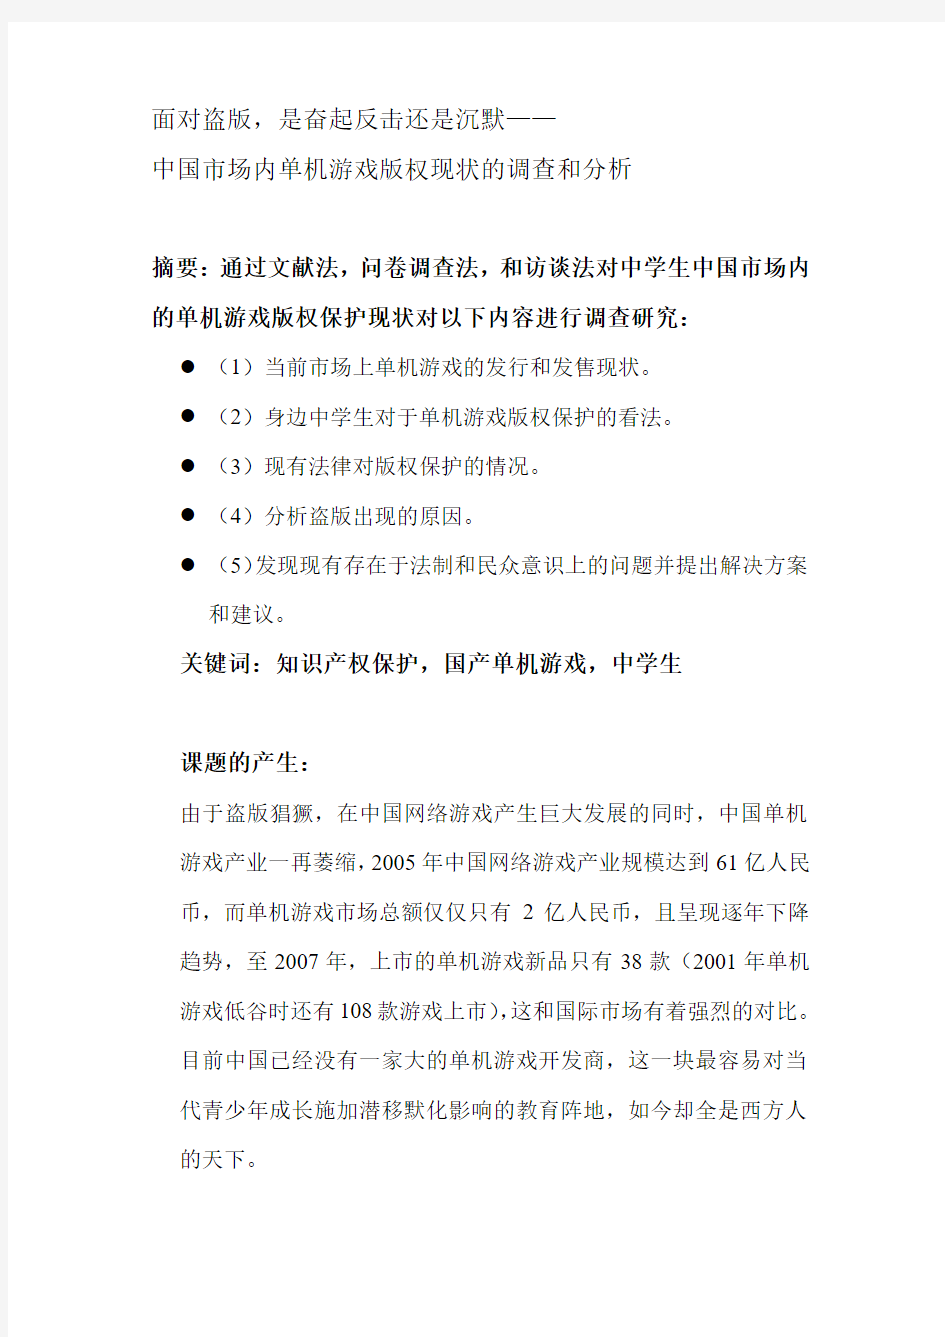 中国单机游戏知识产权保护现状结题报告